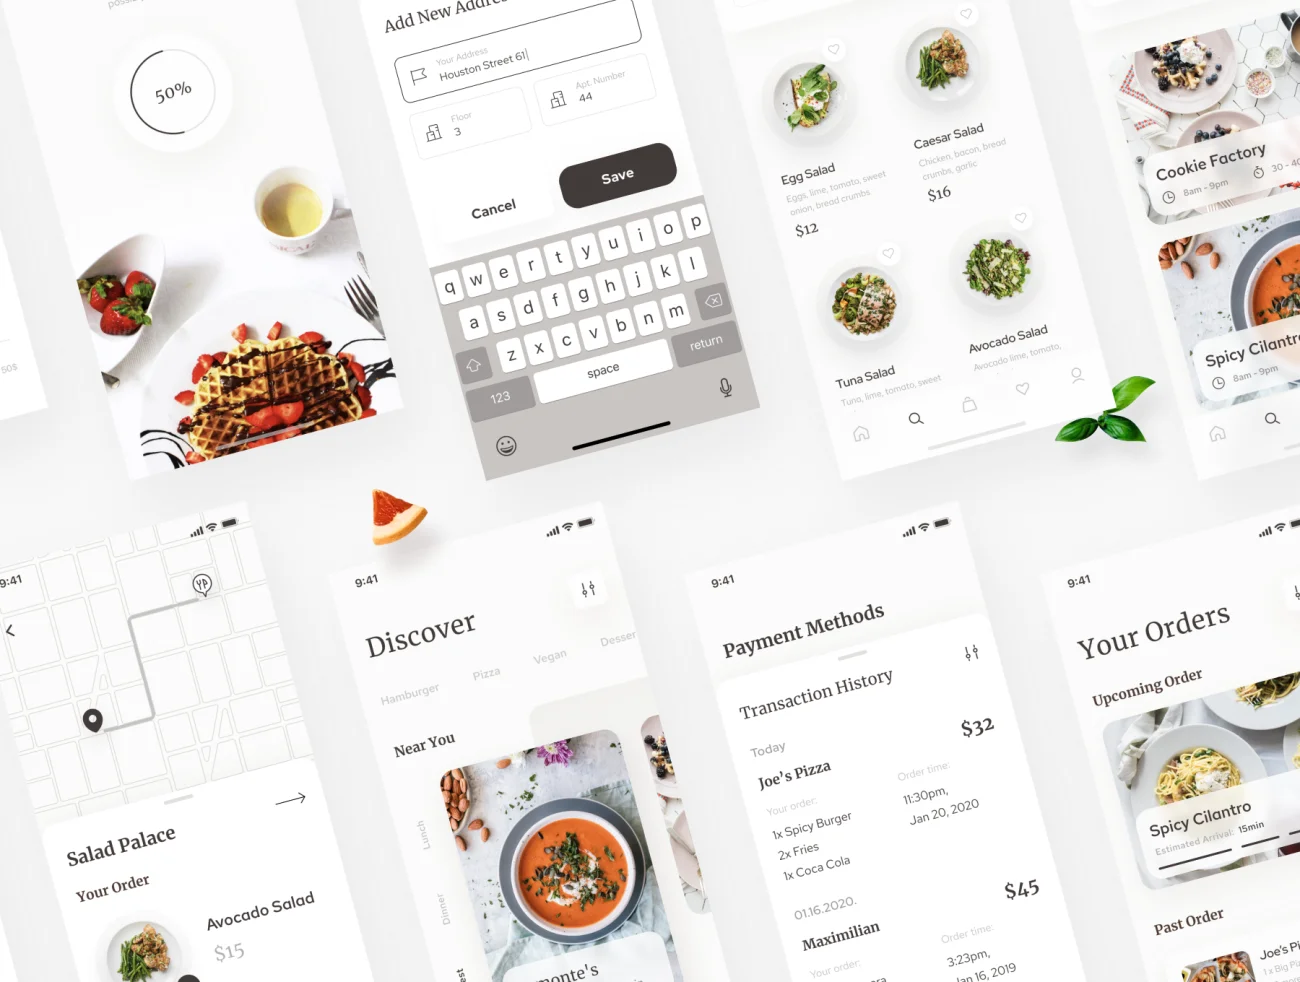 Homes - Food Delivery App 80屏餐厅外卖点餐送餐应用UI设计套件-UI/UX、ui套件、付款、列表、卡片式、图表、应用、引导页、支付、日历、注册、登录页、着陆页、网购、聊天、详情、预订-到位啦UI